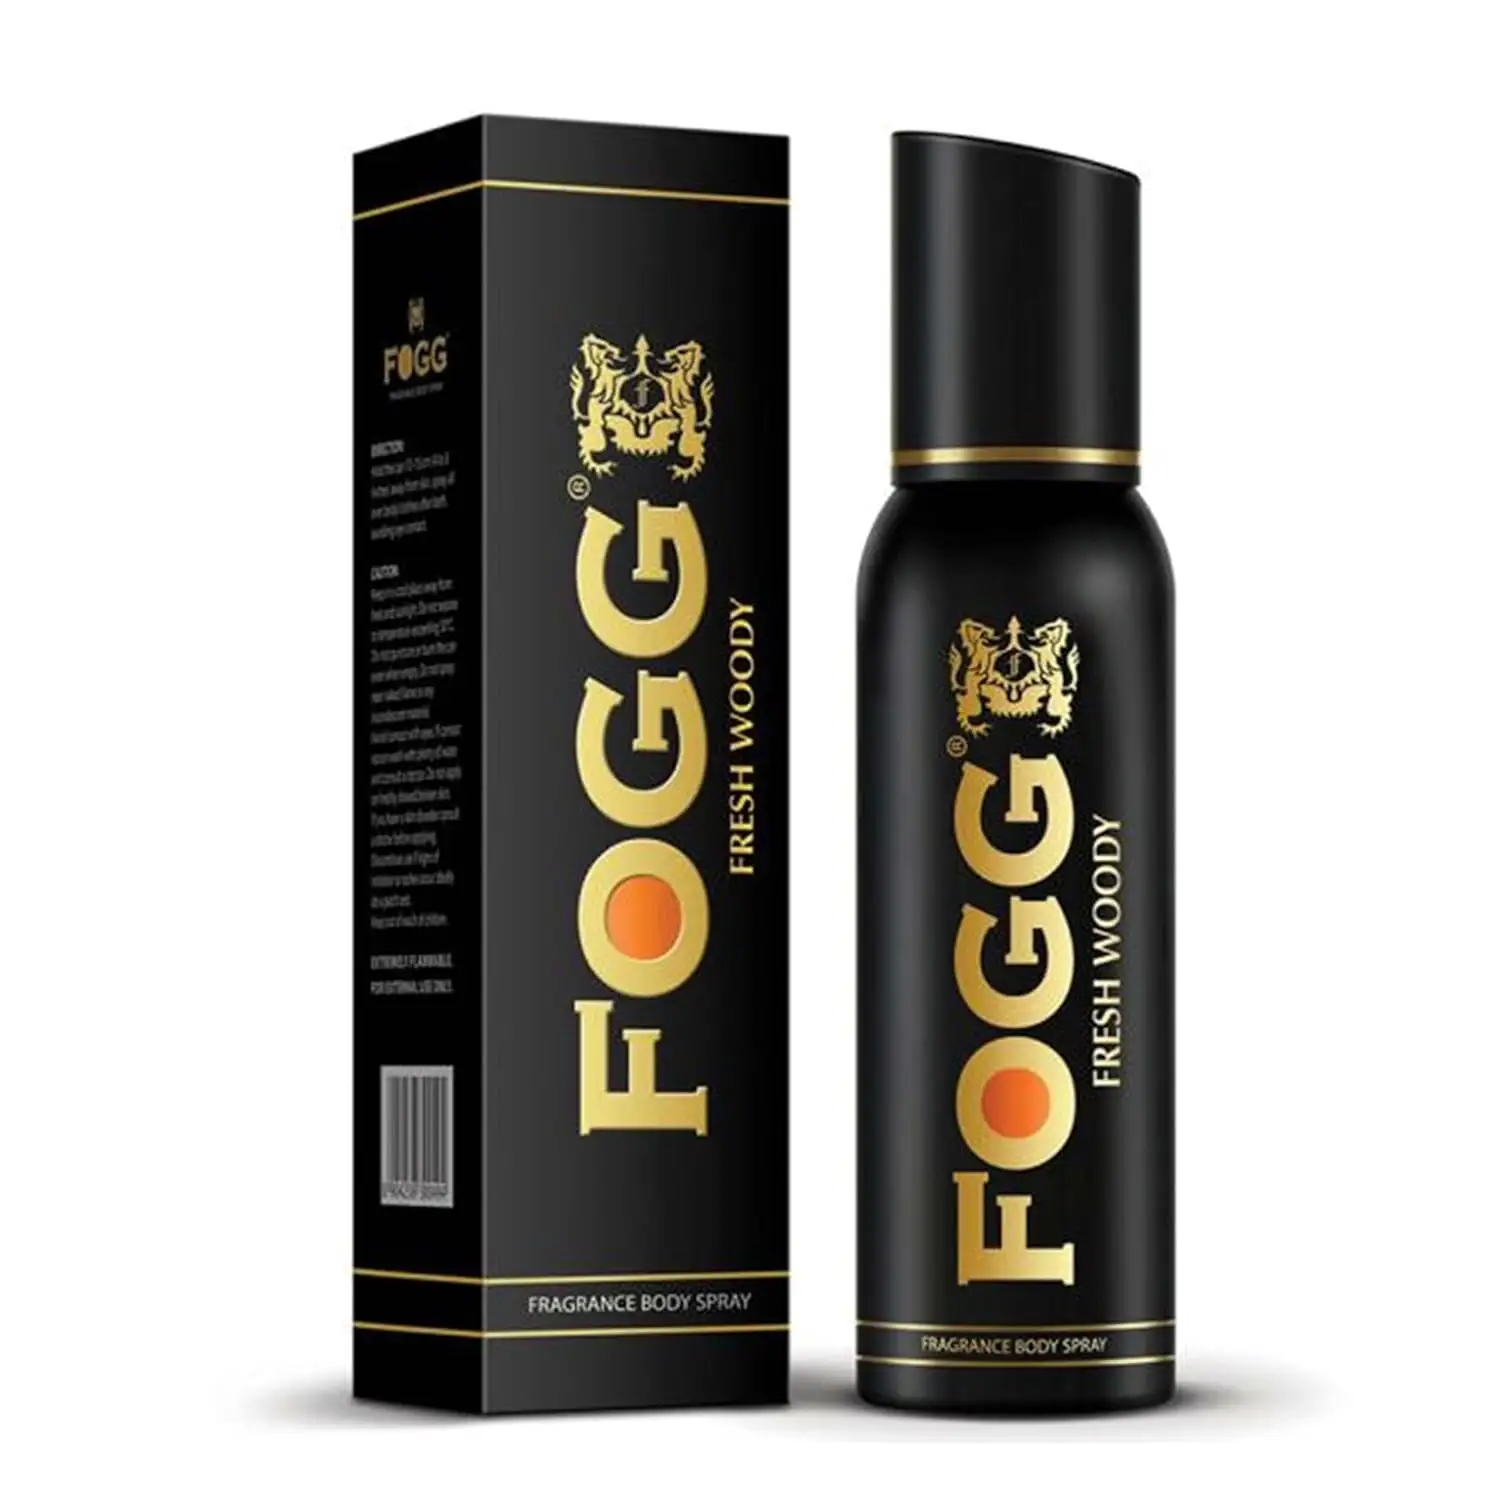 Hot selling Deodorant Long-Lasting Spray Fogg Fresh Woody 120 ml Fresh & Powerful Fragrance Body spray for men